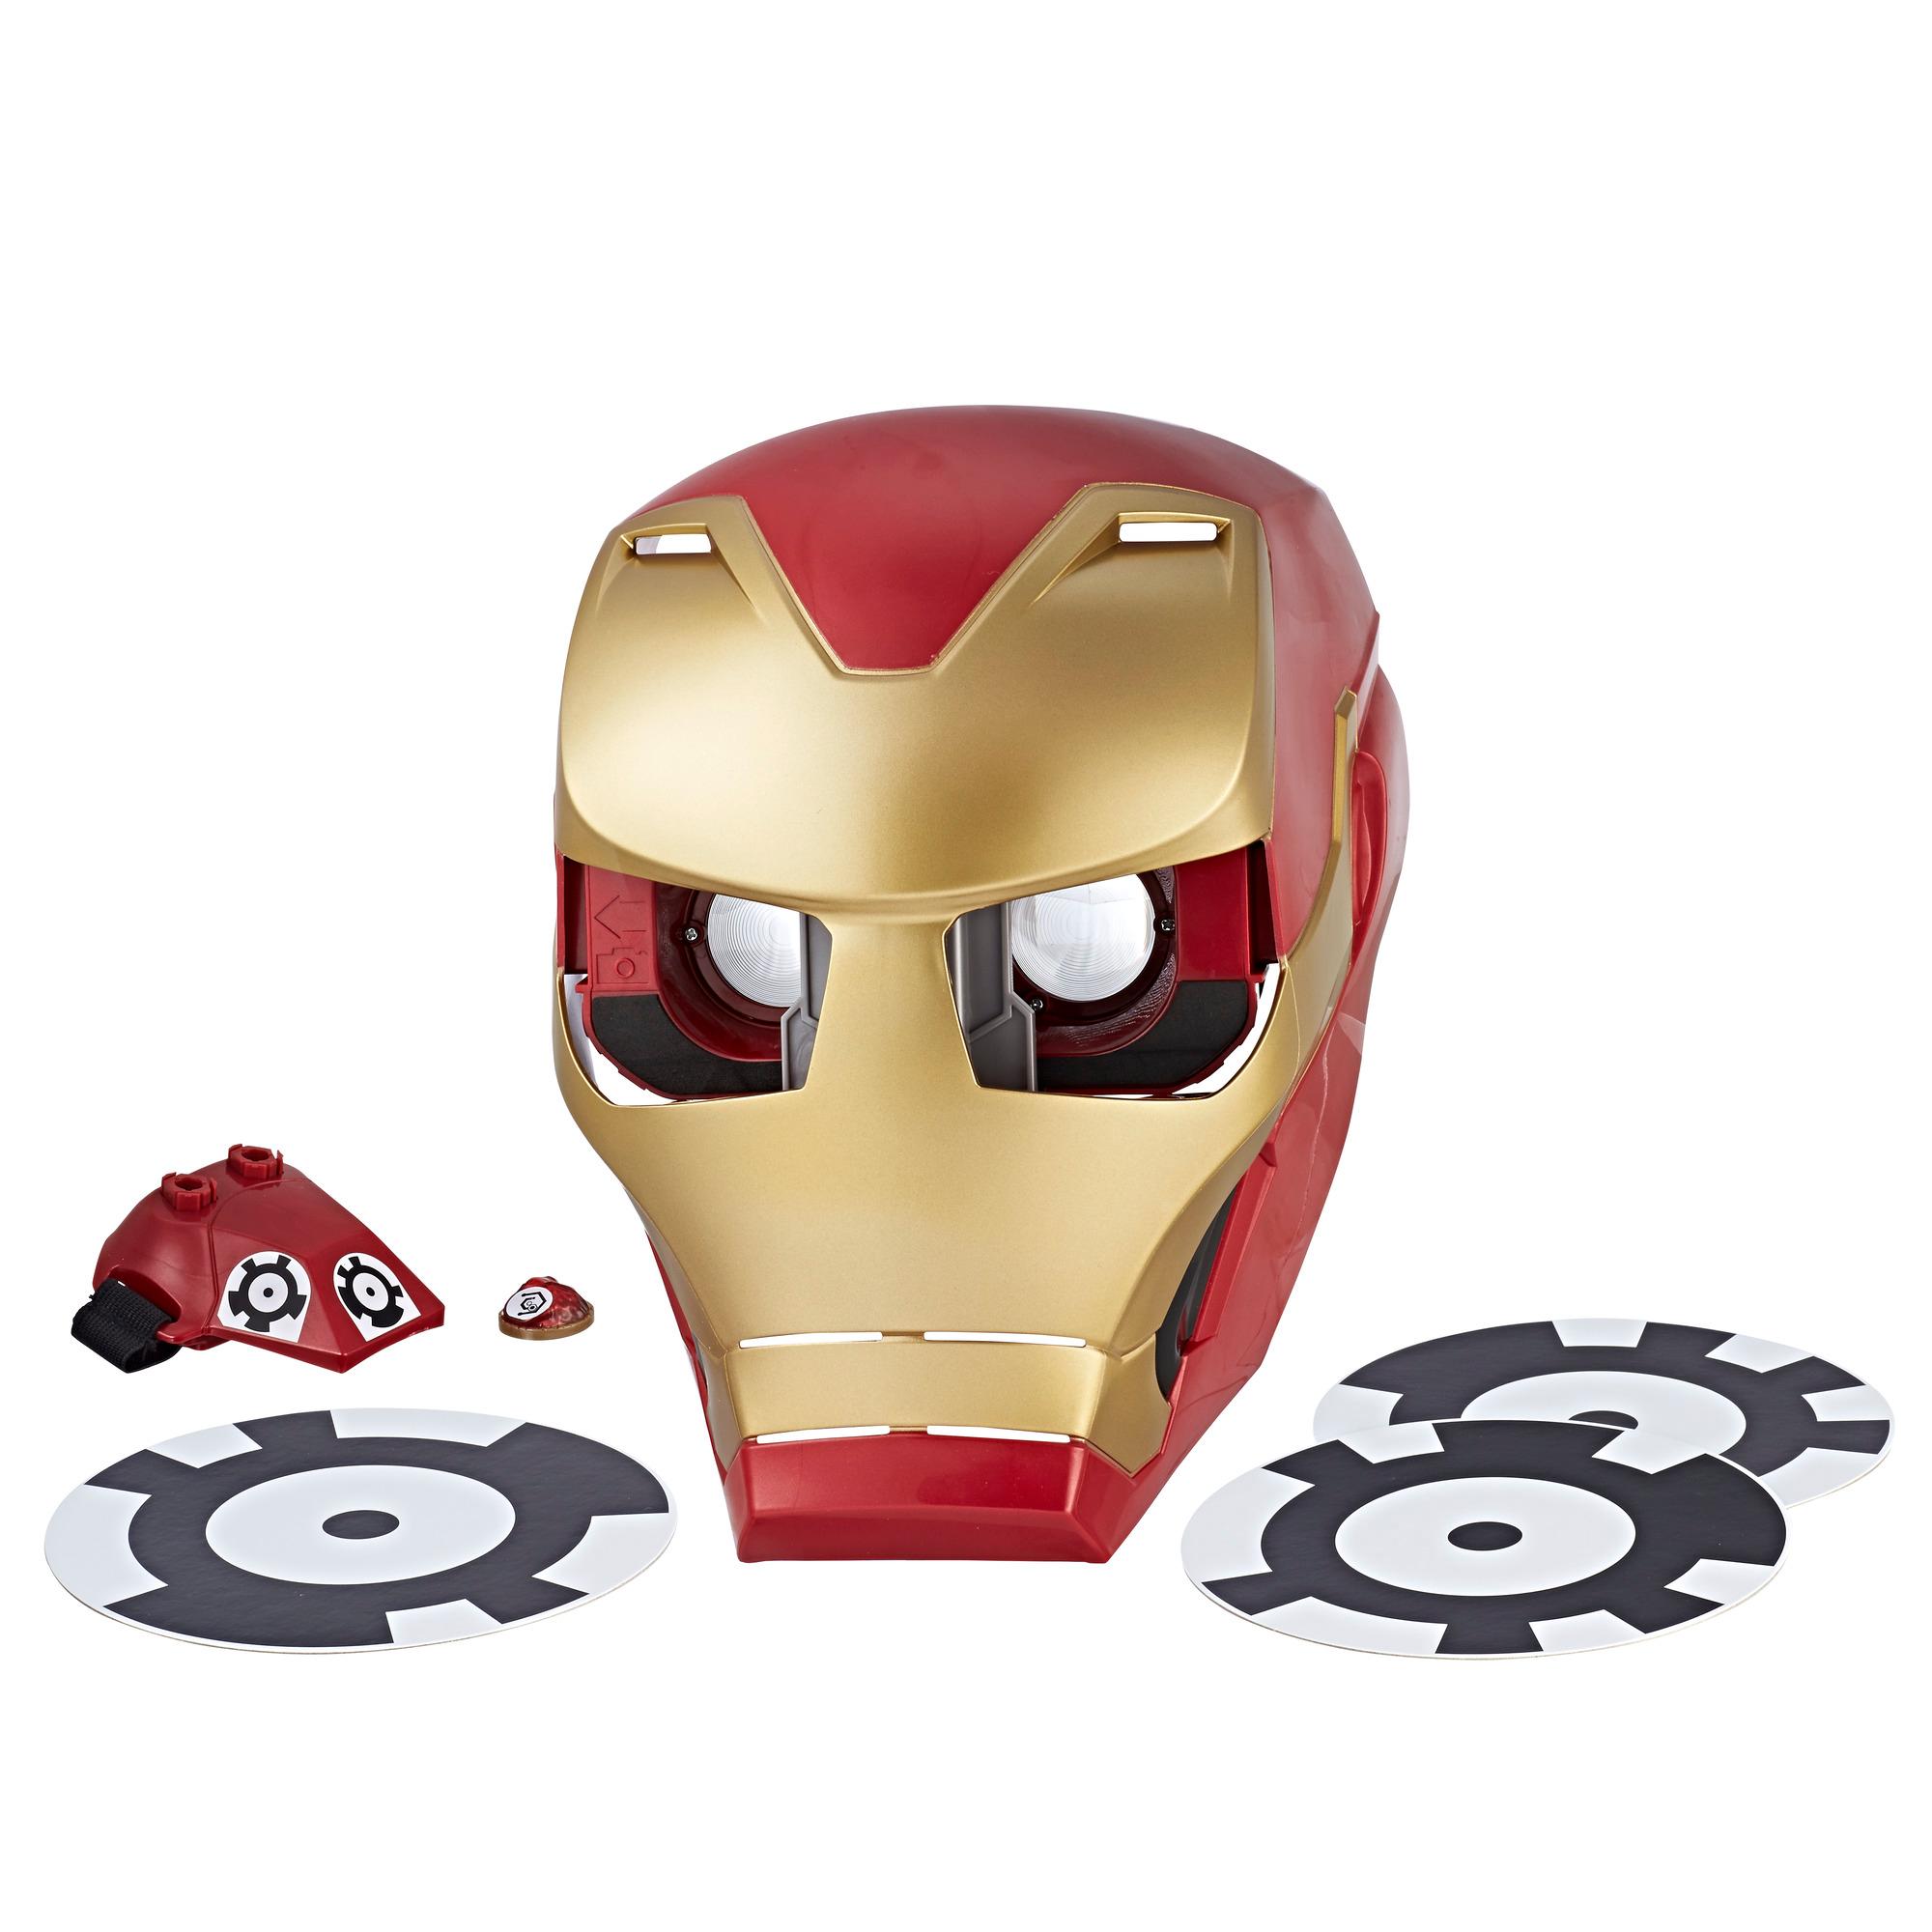 Mavel Avengers Infinity War Iron Man Casco De Experiencia De Realidad Aumentada